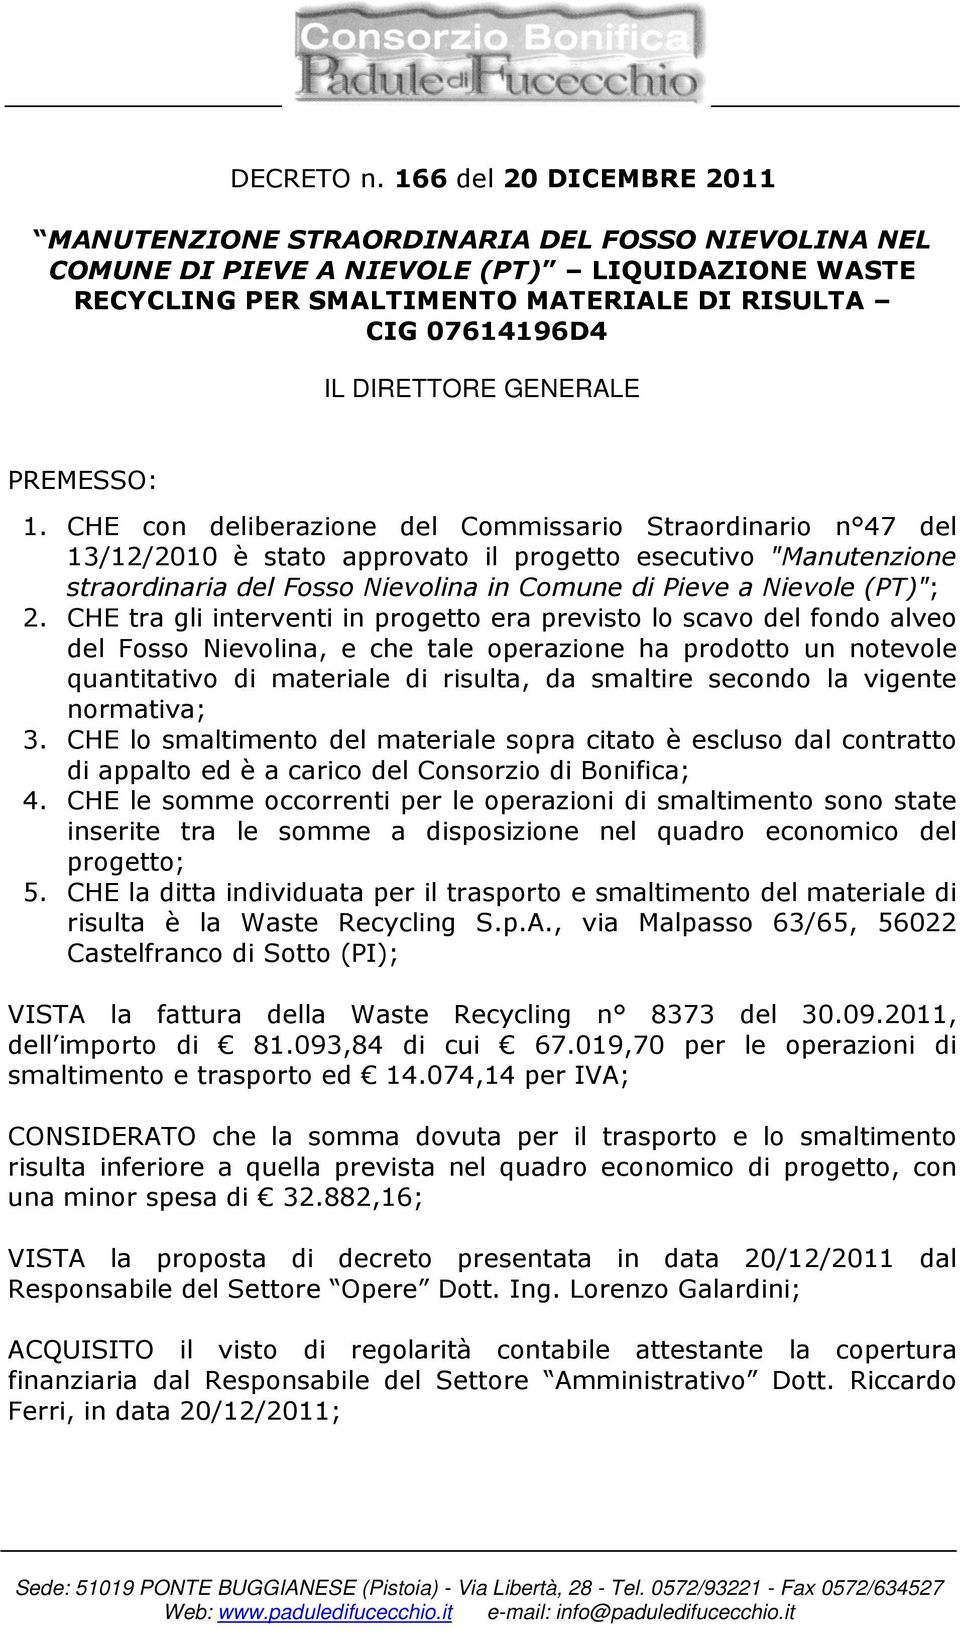 CHE con deliberazione del Commissario Straordinario n 47 del 13/12/2010 è stato approvato il progetto esecutivo "Manutenzione straordinaria del Fosso Nievolina in Comune di Pieve a Nievole (PT)"; 2.